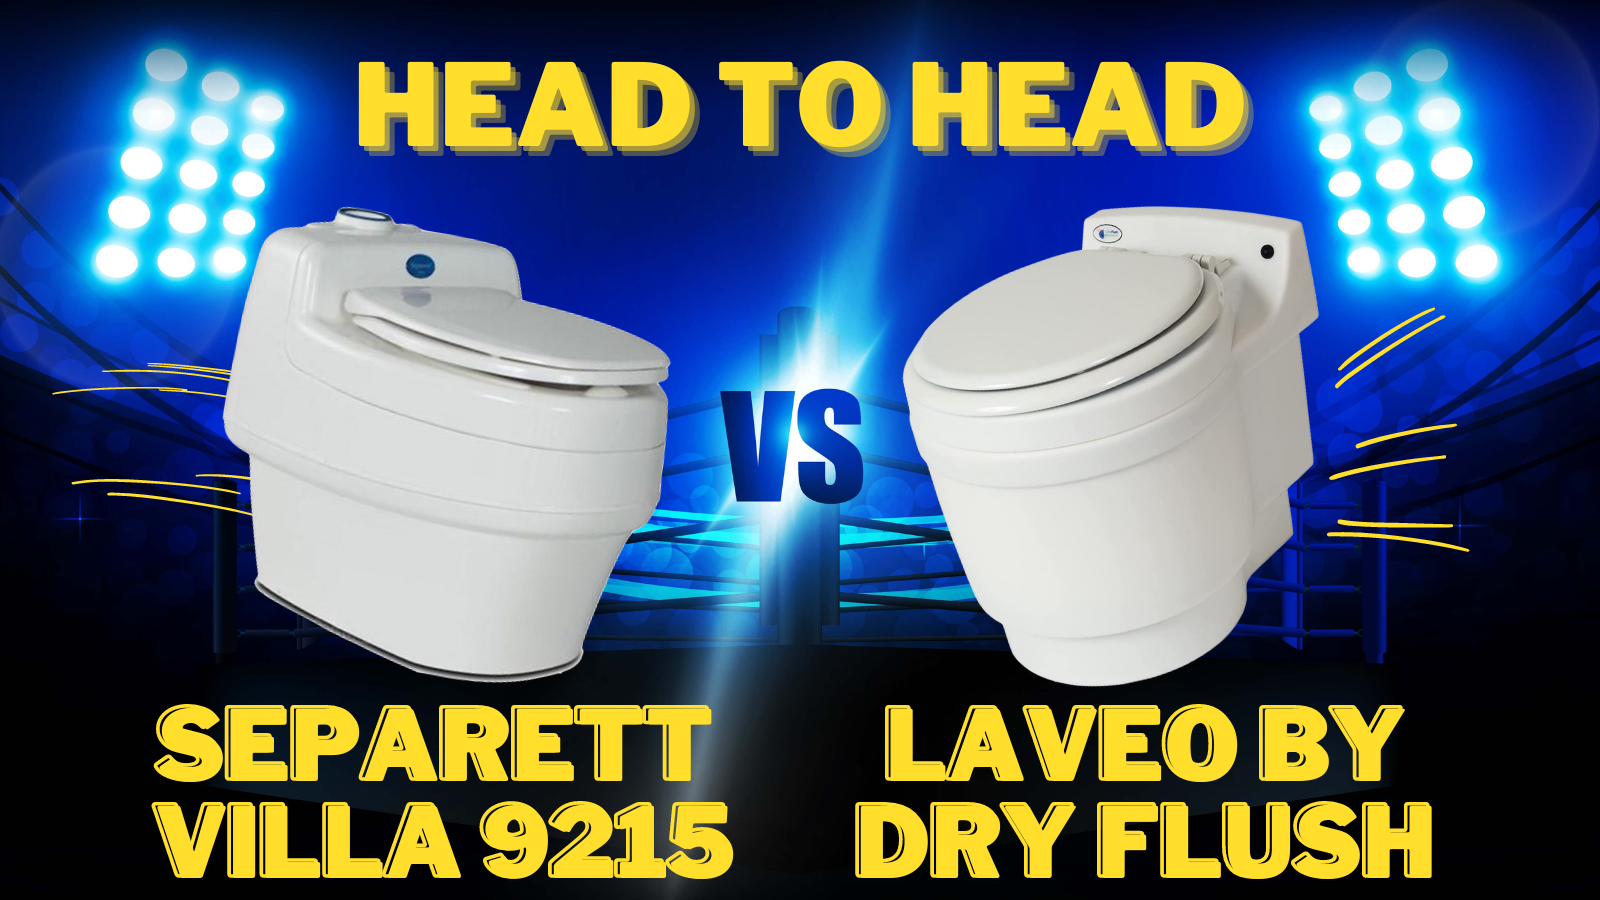 Head to Head Mini Guides: Laveo by Dry Flush versus Separett Villa 9215